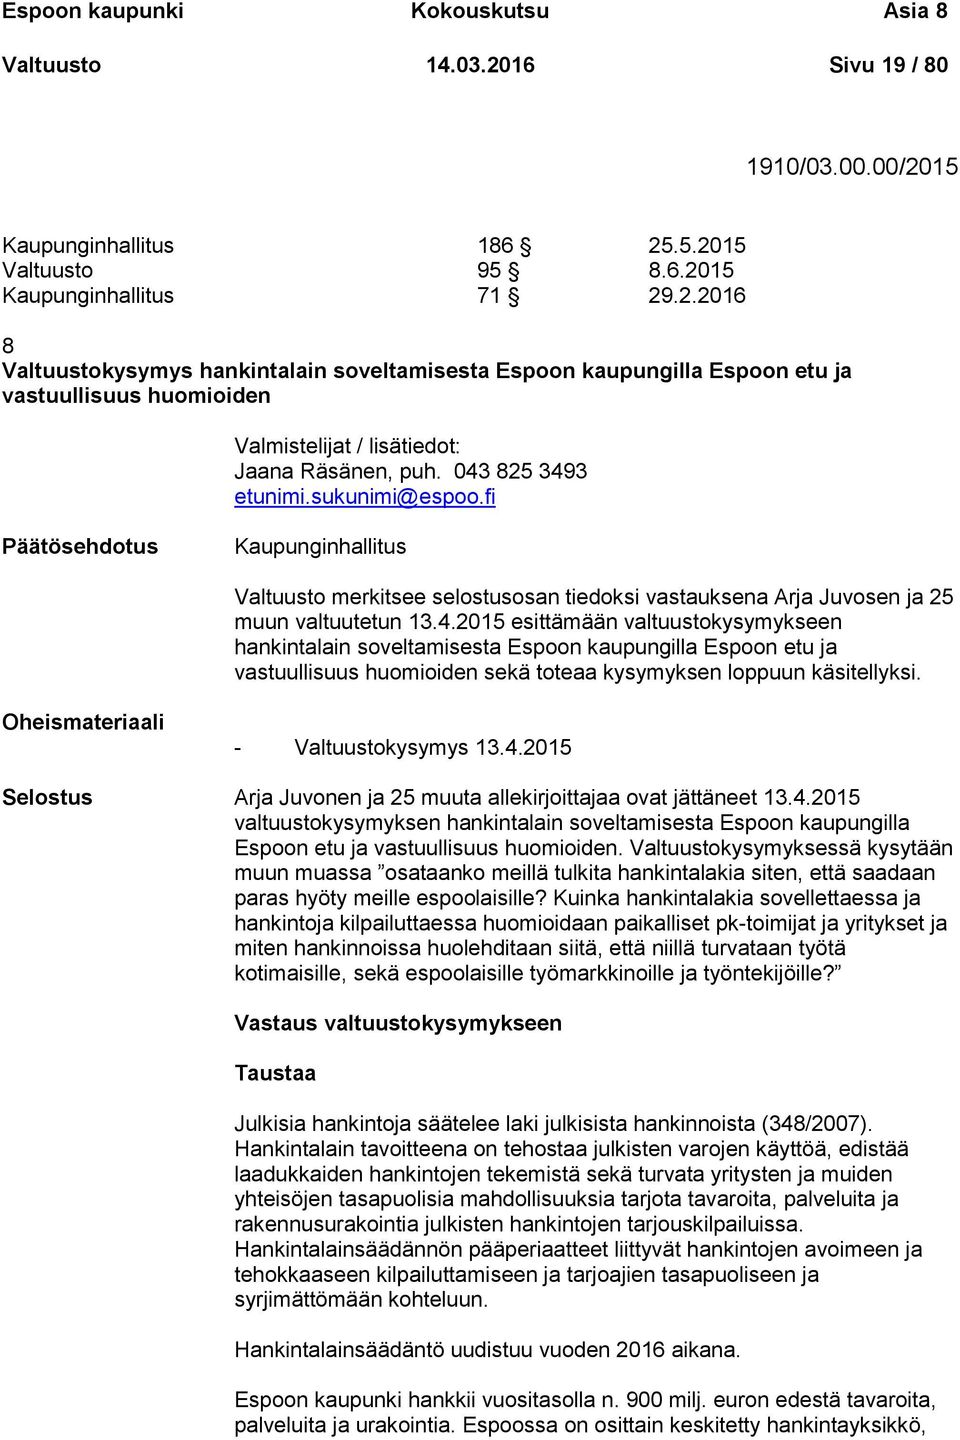 043 825 3493 etunimi.sukunimi@espoo.fi Kaupunginhallitus Valtuusto merkitsee selostusosan tiedoksi vastauksena Arja Juvosen ja 25 muun valtuutetun 13.4.2015 esittämään valtuustokysymykseen hankintalain soveltamisesta Espoon kaupungilla Espoon etu ja vastuullisuus huomioiden sekä toteaa kysymyksen loppuun käsitellyksi.